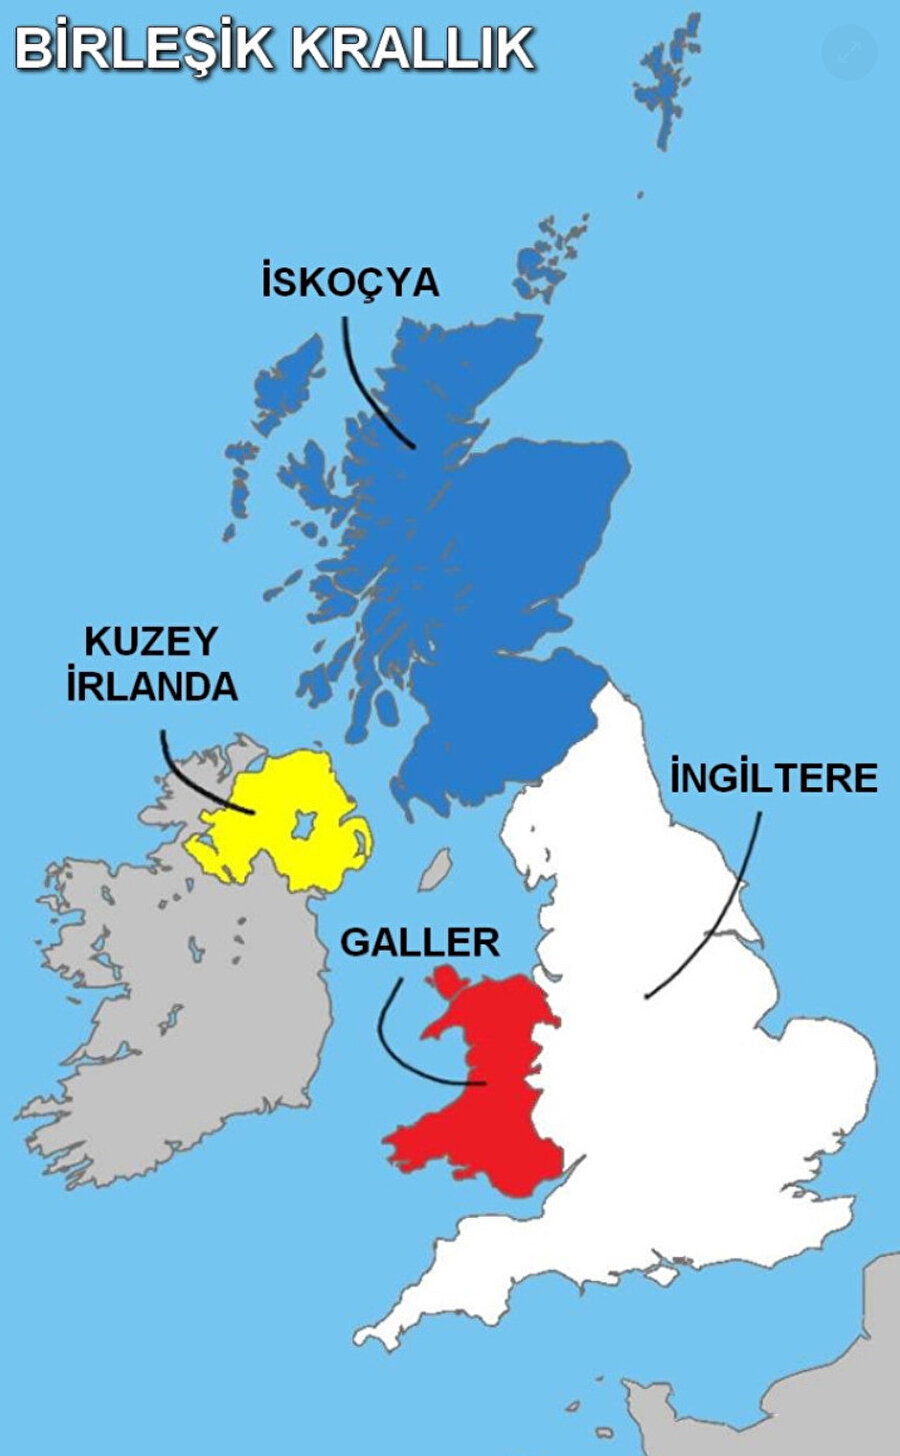 Birleşik Krallık; İngiltere, İskoçya, Kuzey İrlanda ve Galler'den oluşuyor. 